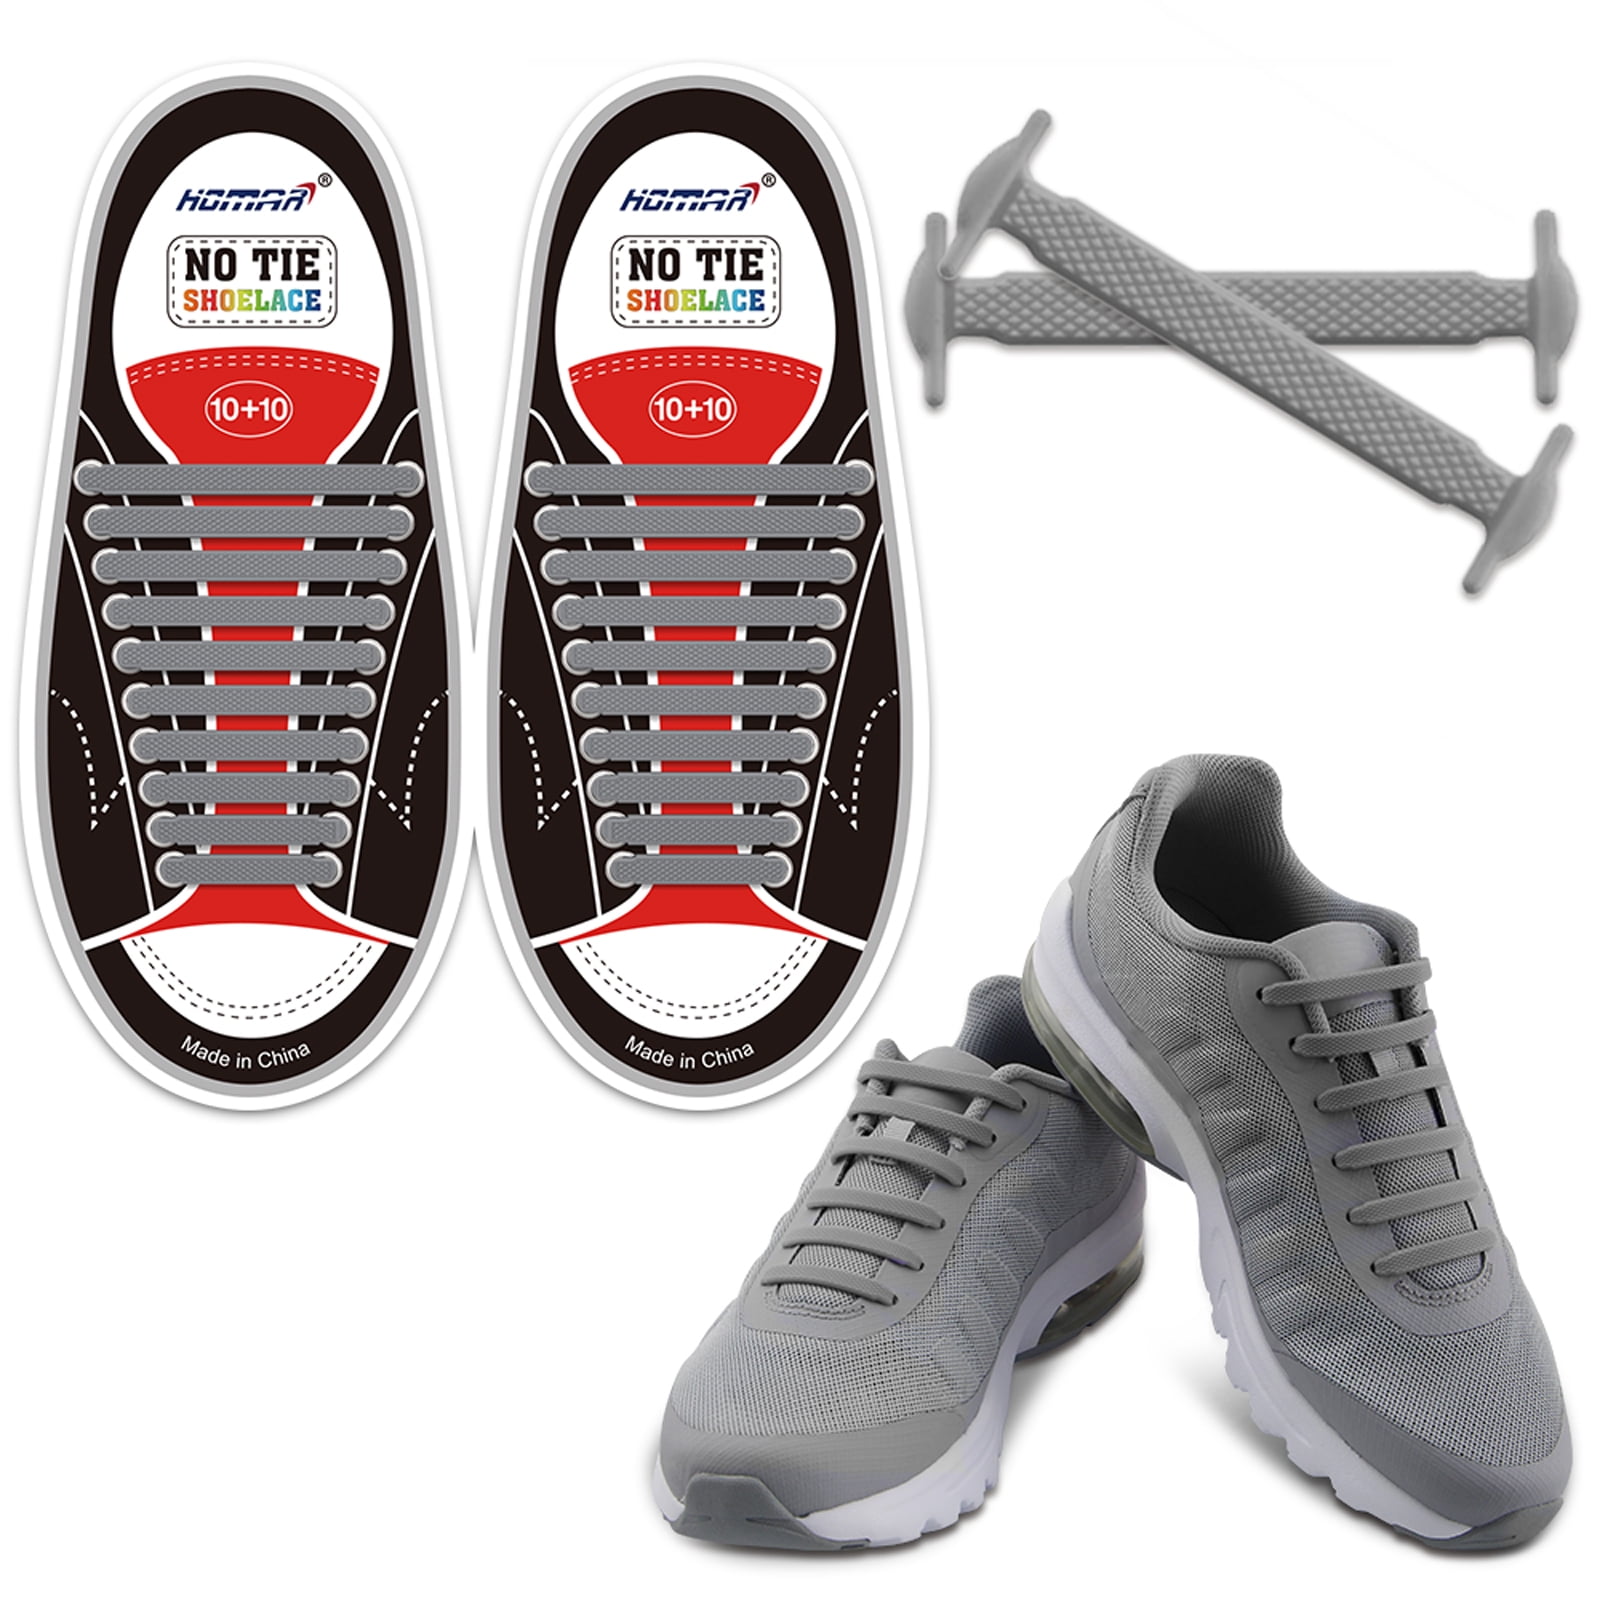 Easy Sneaker 12 Pcs Shoelaces Elastic Shoe Laces New No Tie Shoelaces Silicone 